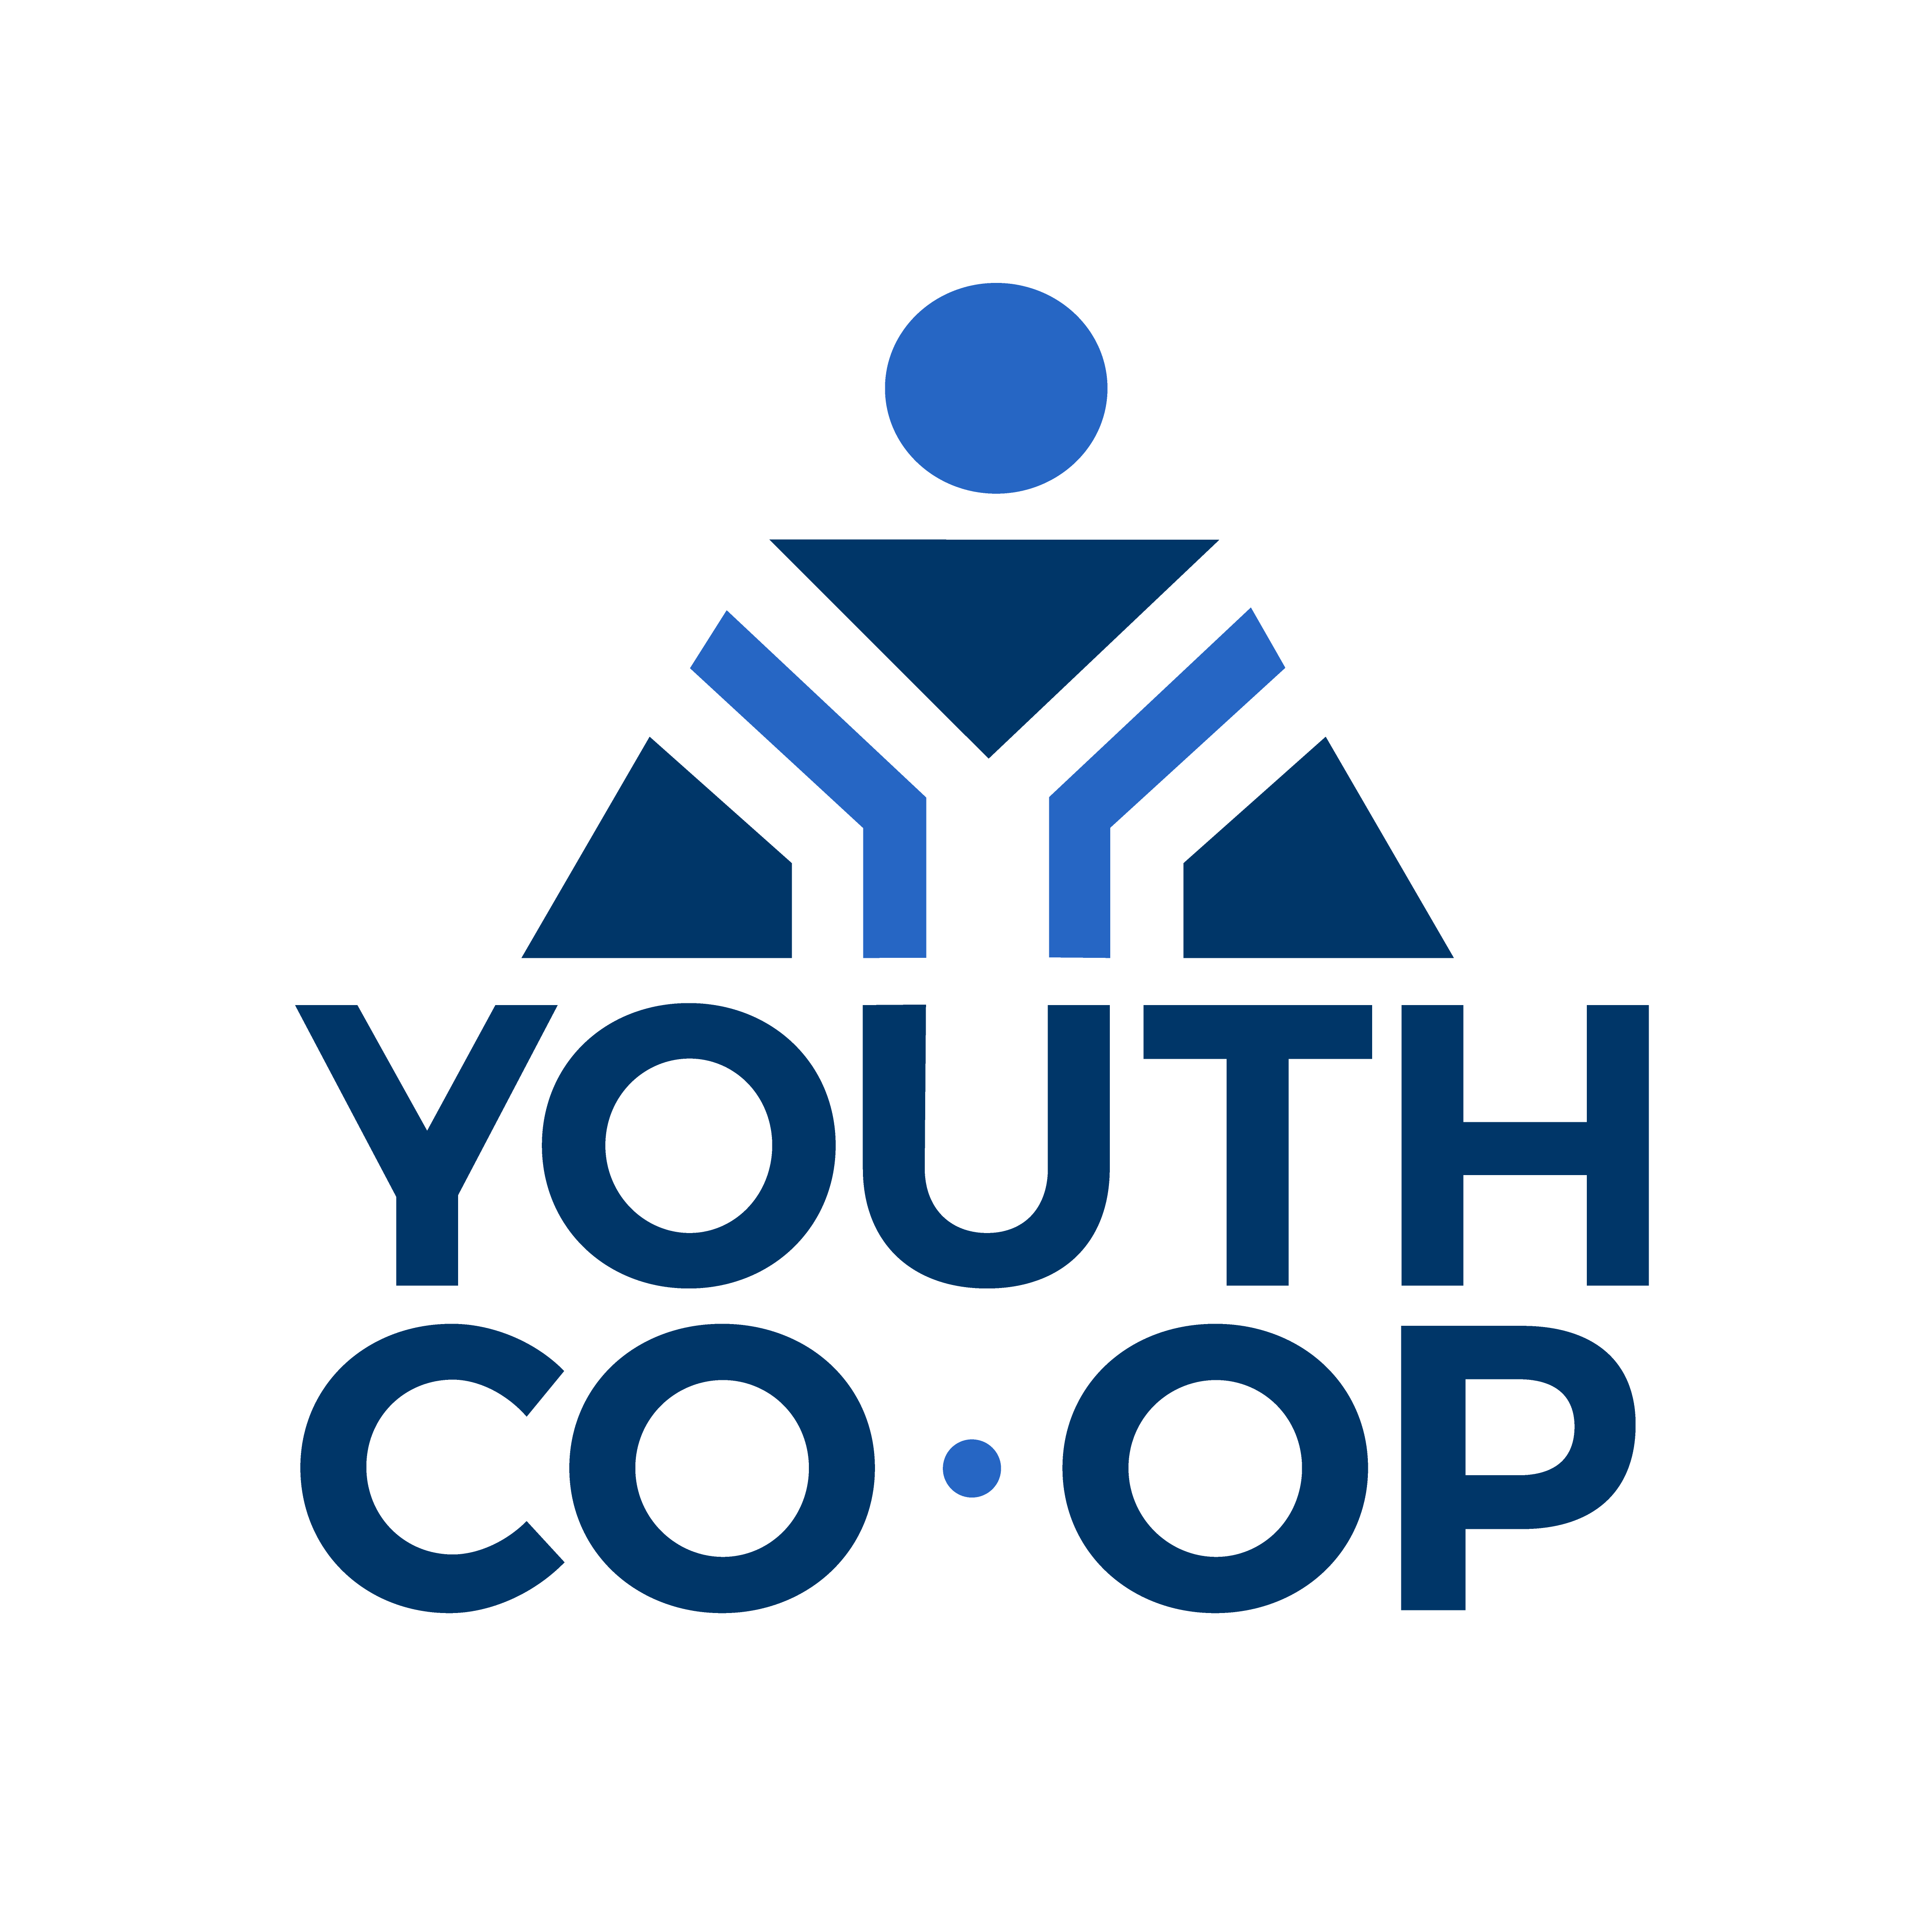 Youth Co-Op logo